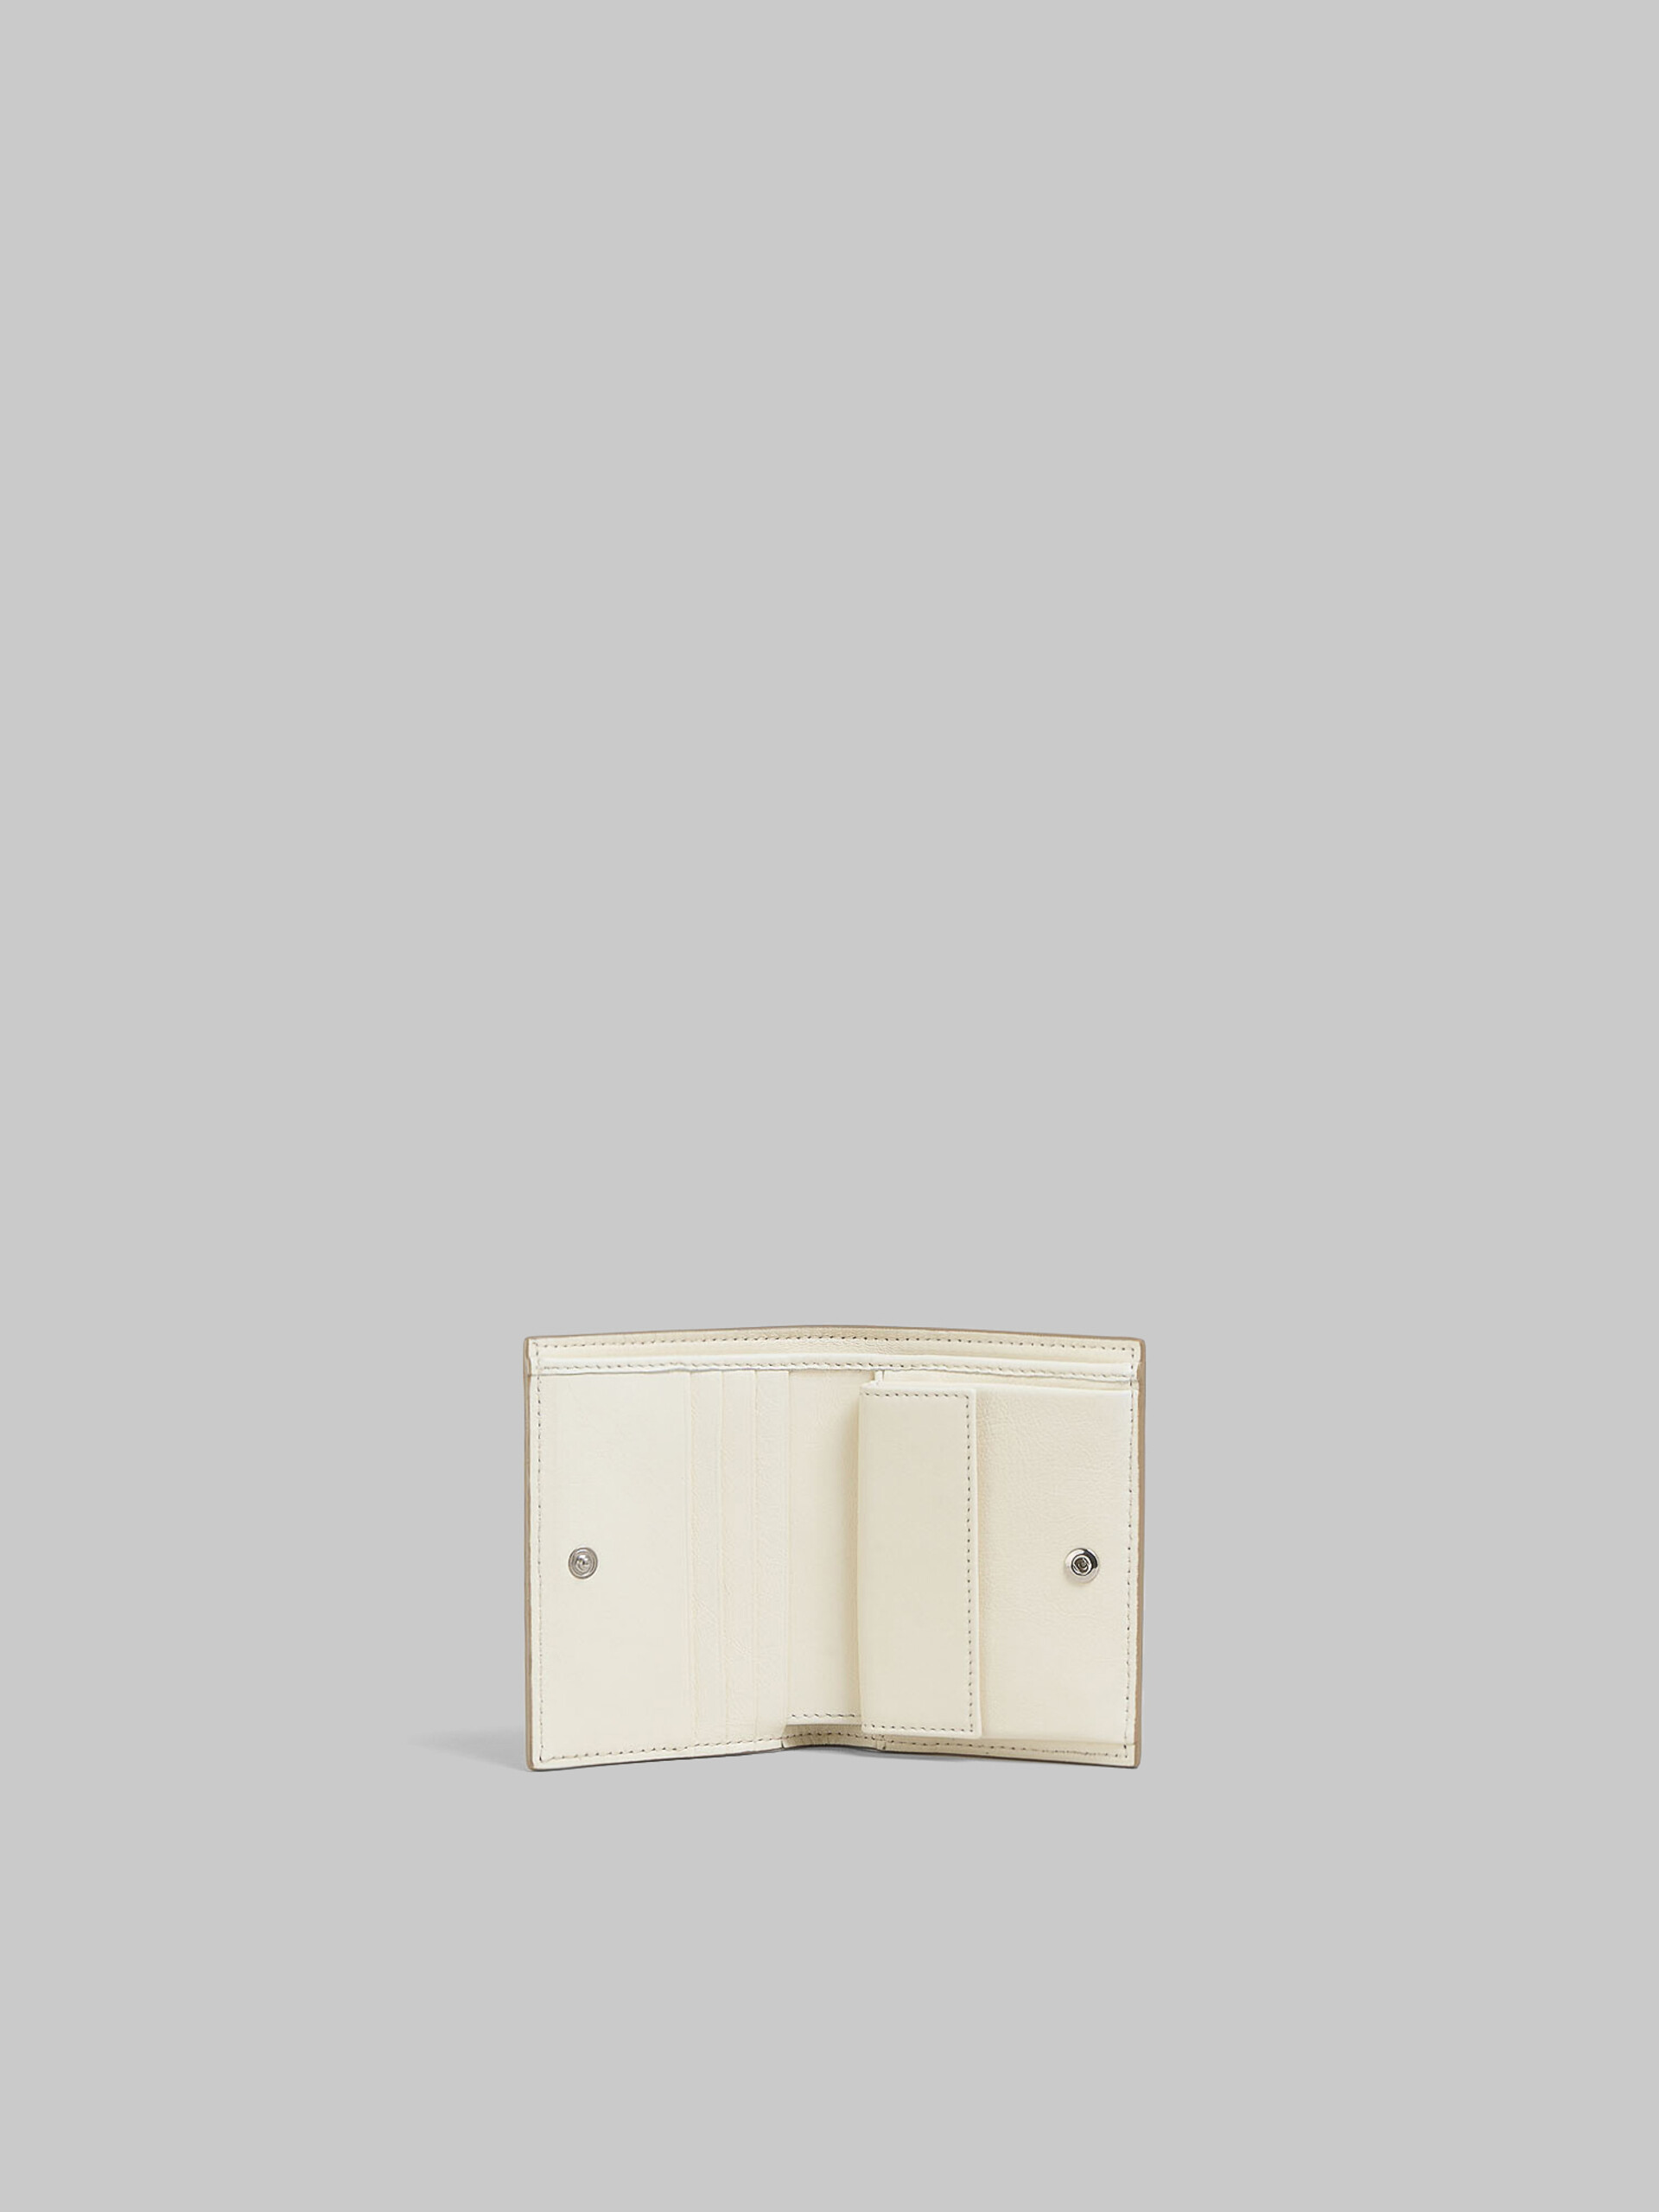 ブラック レザー製 二つ折りウォレット、レイズド マルニロゴ - 財布 - Image 2